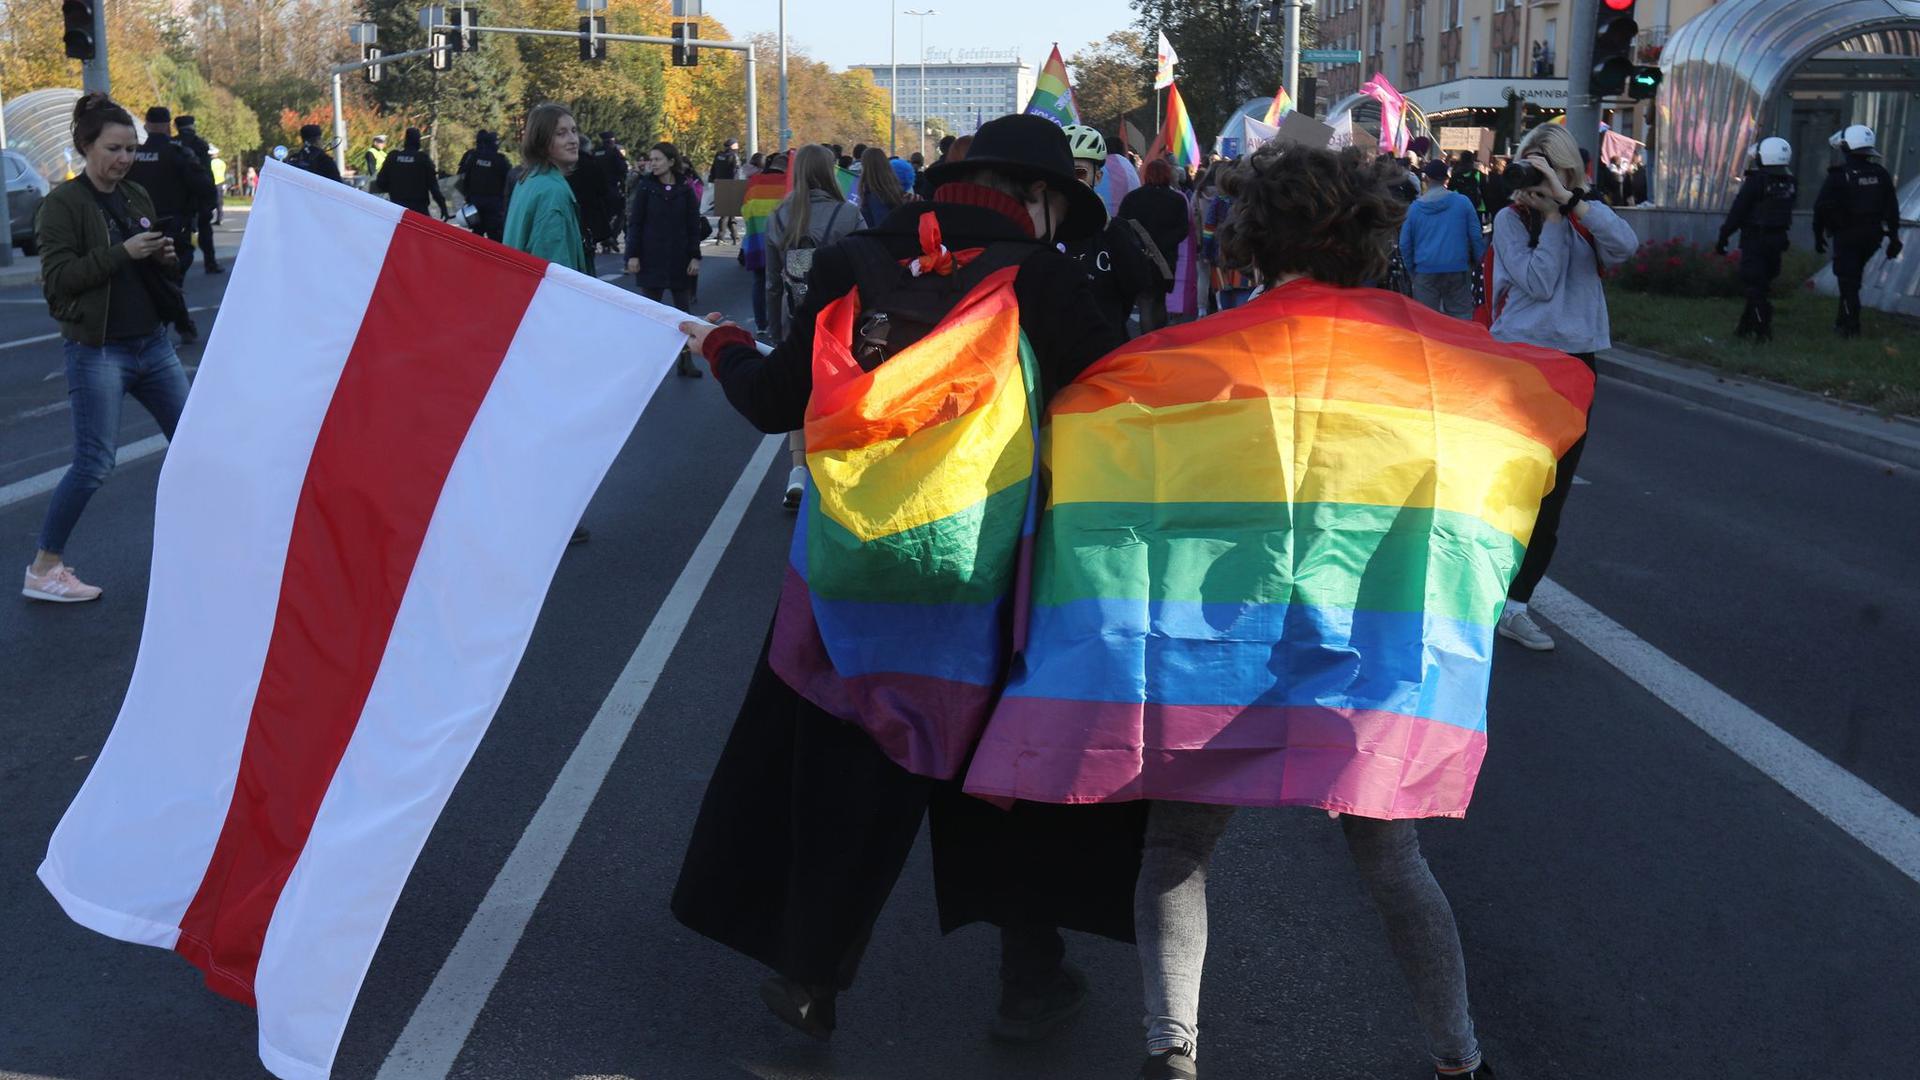 In Polen nehmen Menschen an einer Demonstration zur Gleichberechtigung für Mitglieder der LGBTQ-Community teil.